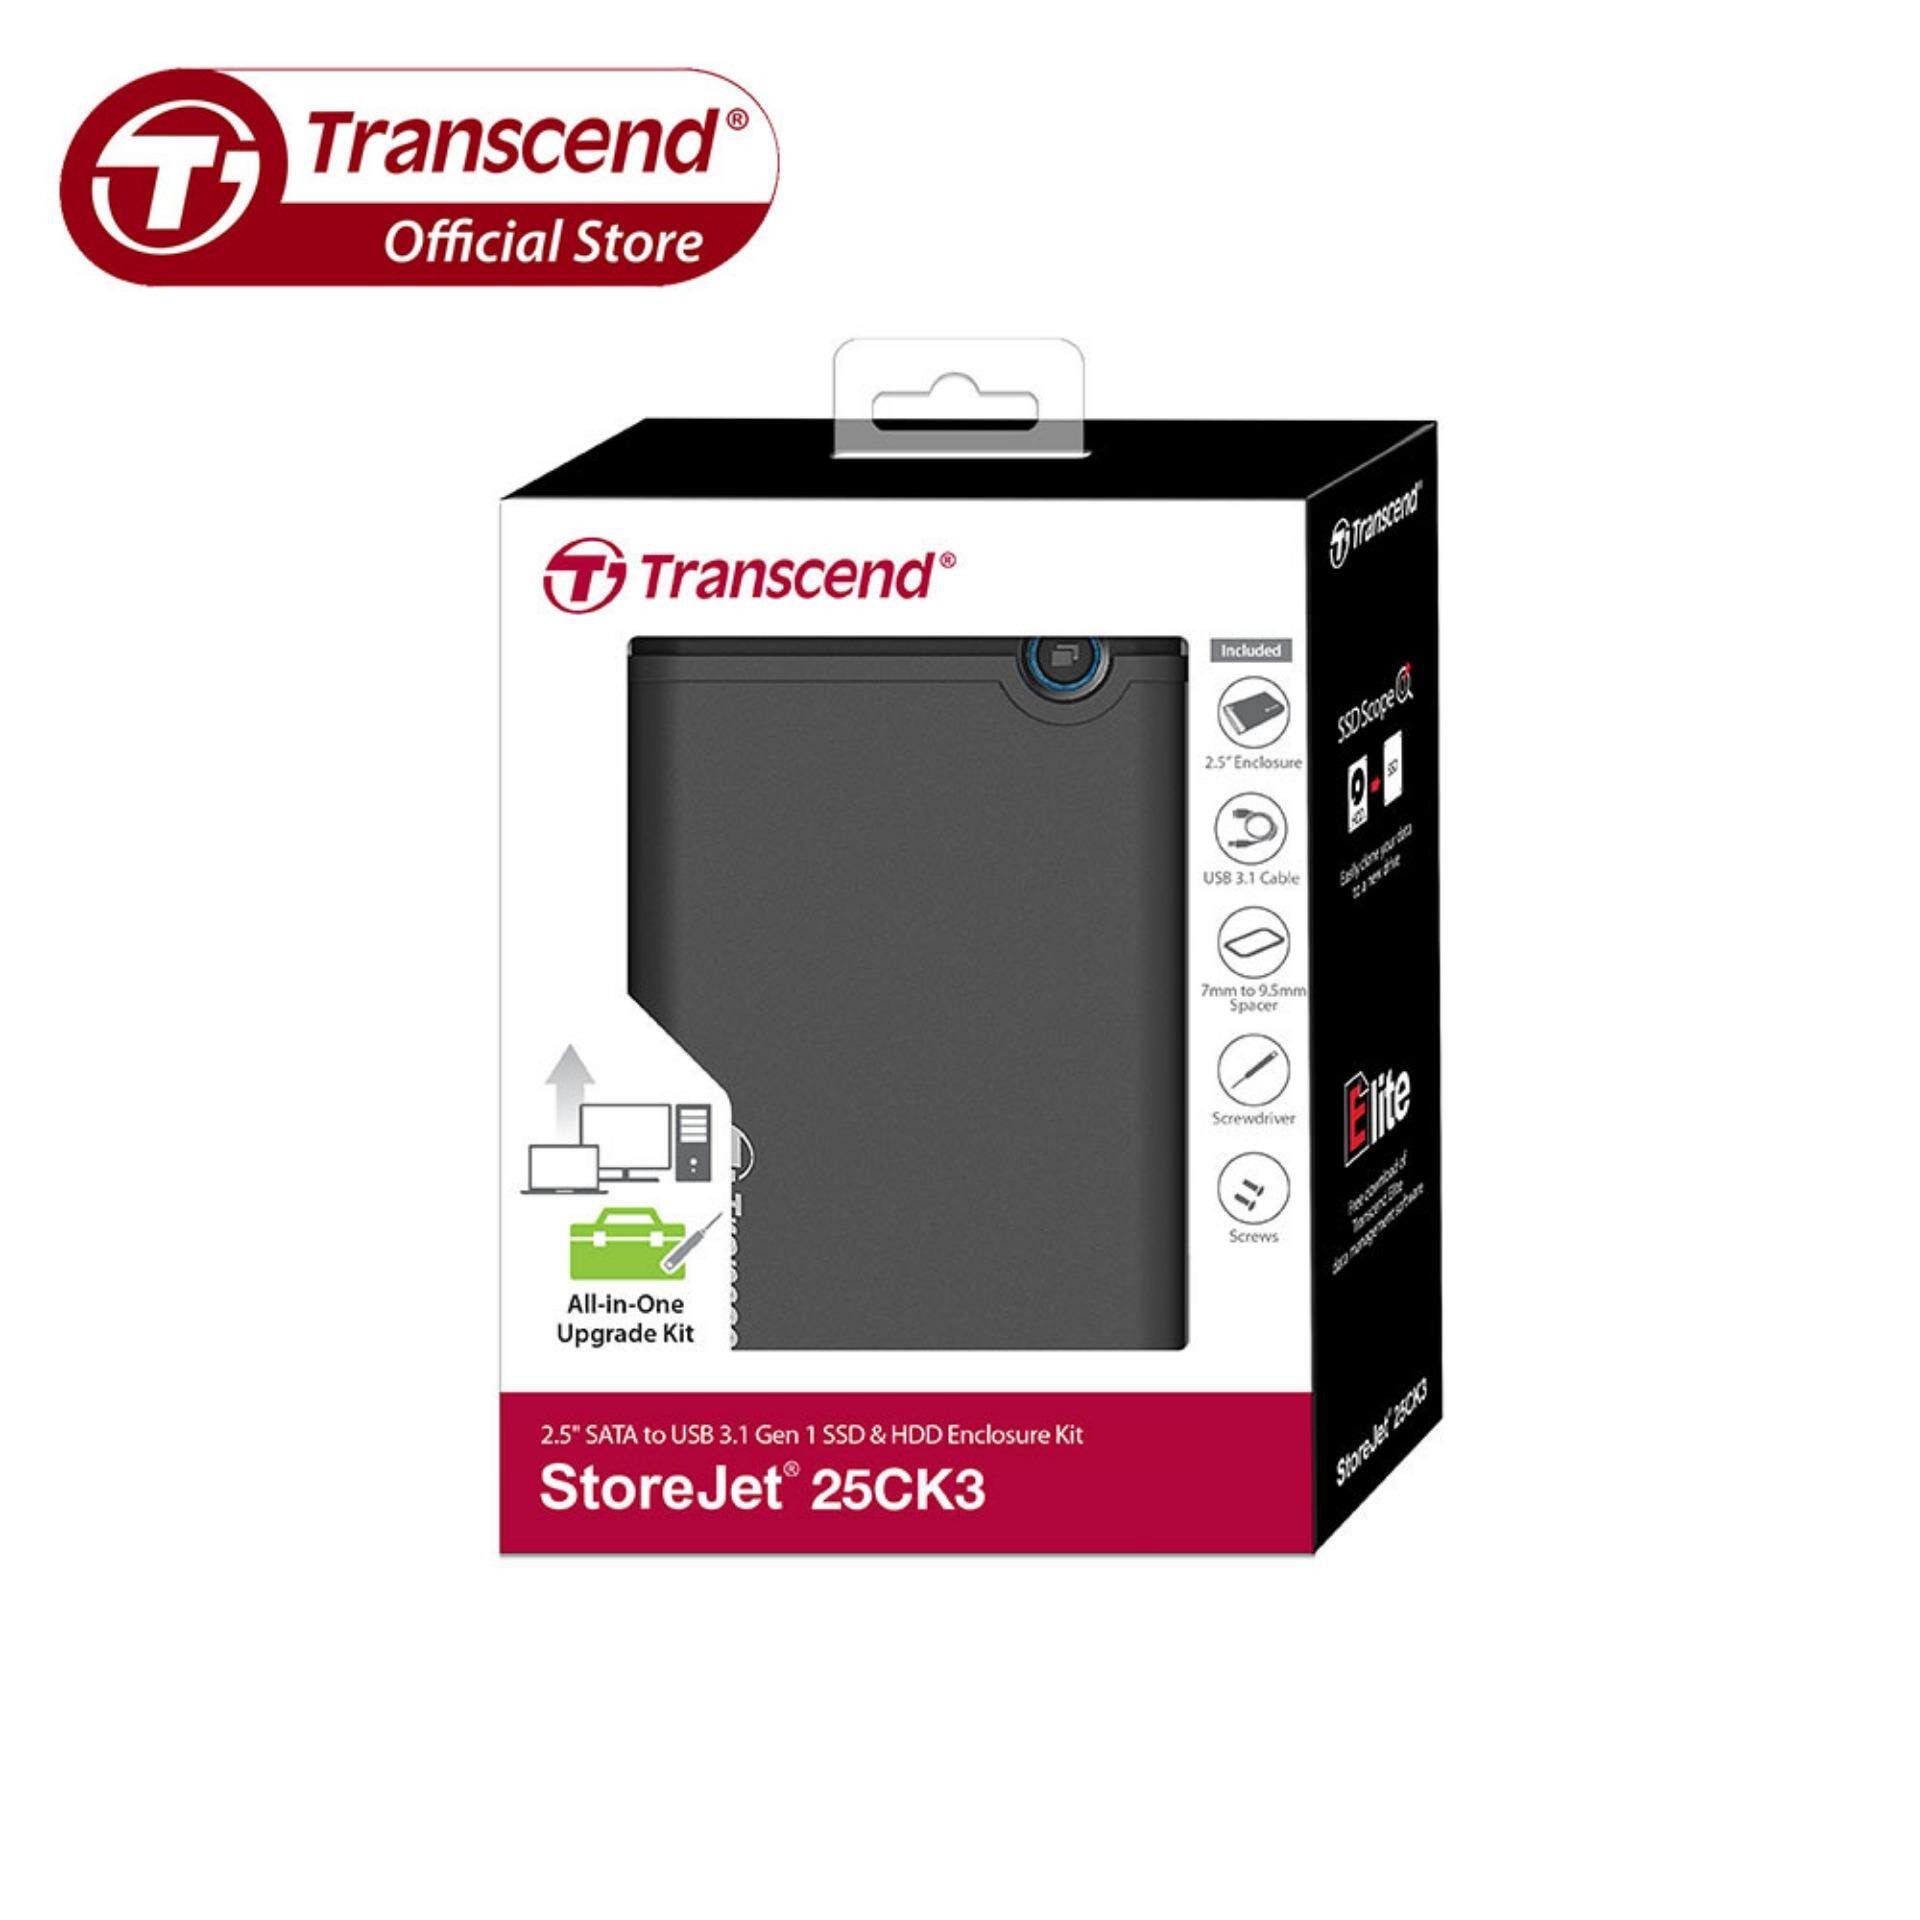 StoreJet 25CK3 Transcend TS0GSJ25CK3 Enclosure Kit Gen 1 SSD/HDD USB 3.1 2.5” SATA III 